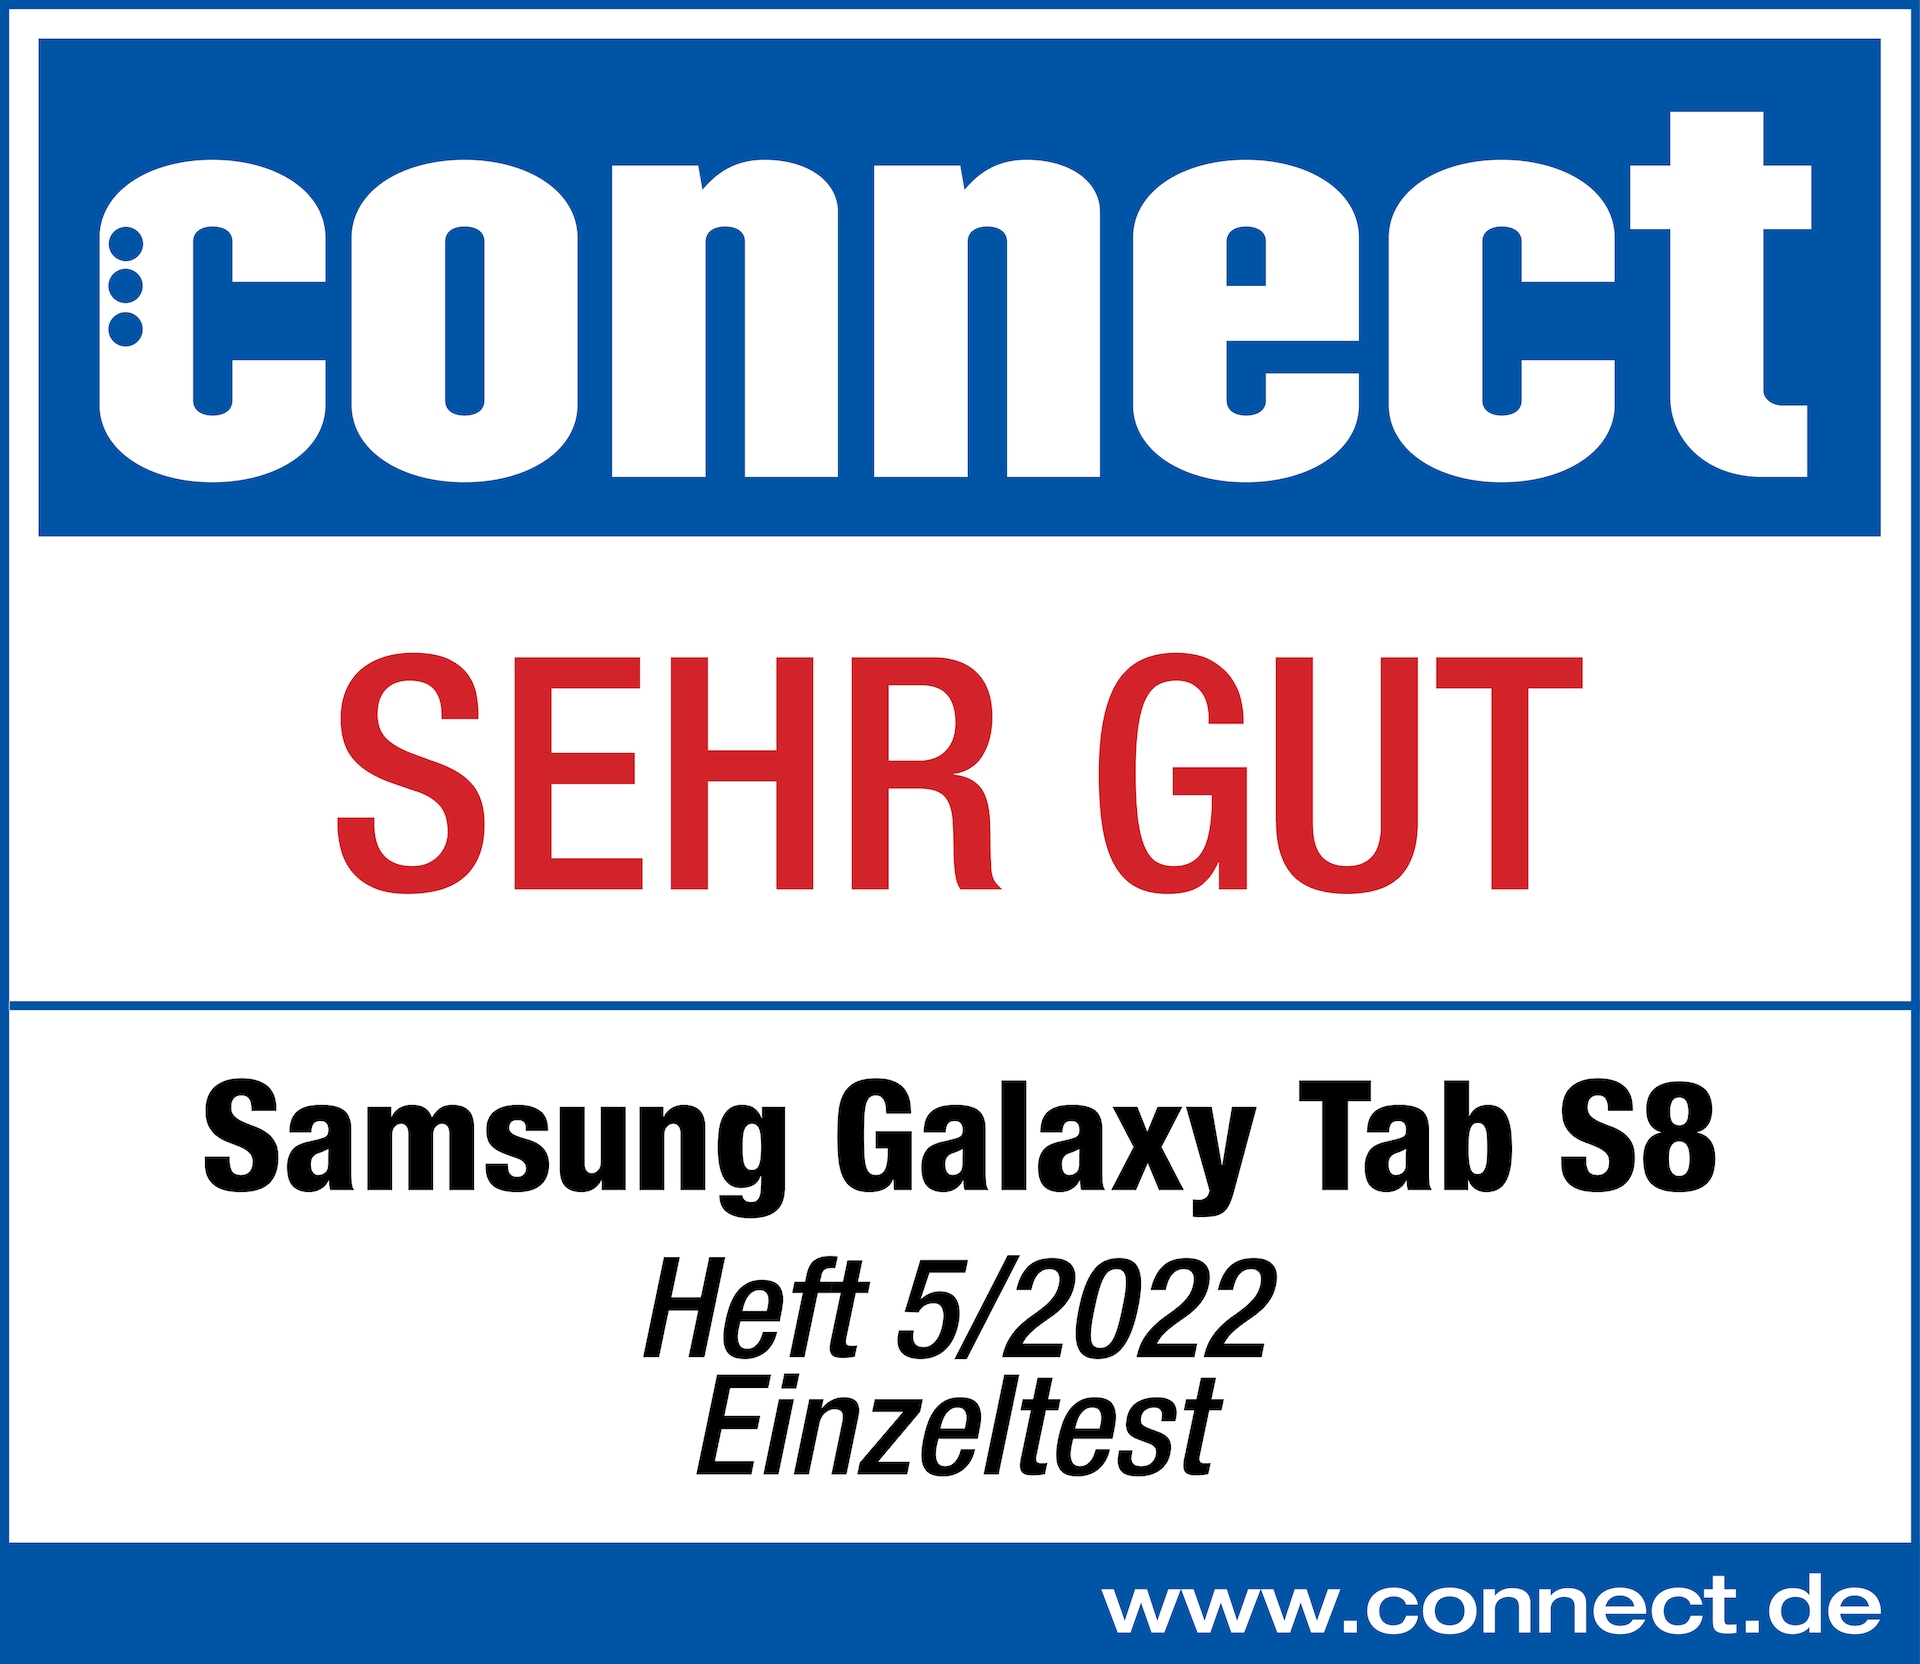 Connect, Gesamtergebnis: sehr gut, Ausgabe 05/2022, zum Samsung Galaxy Tab S8, Einzeltest.